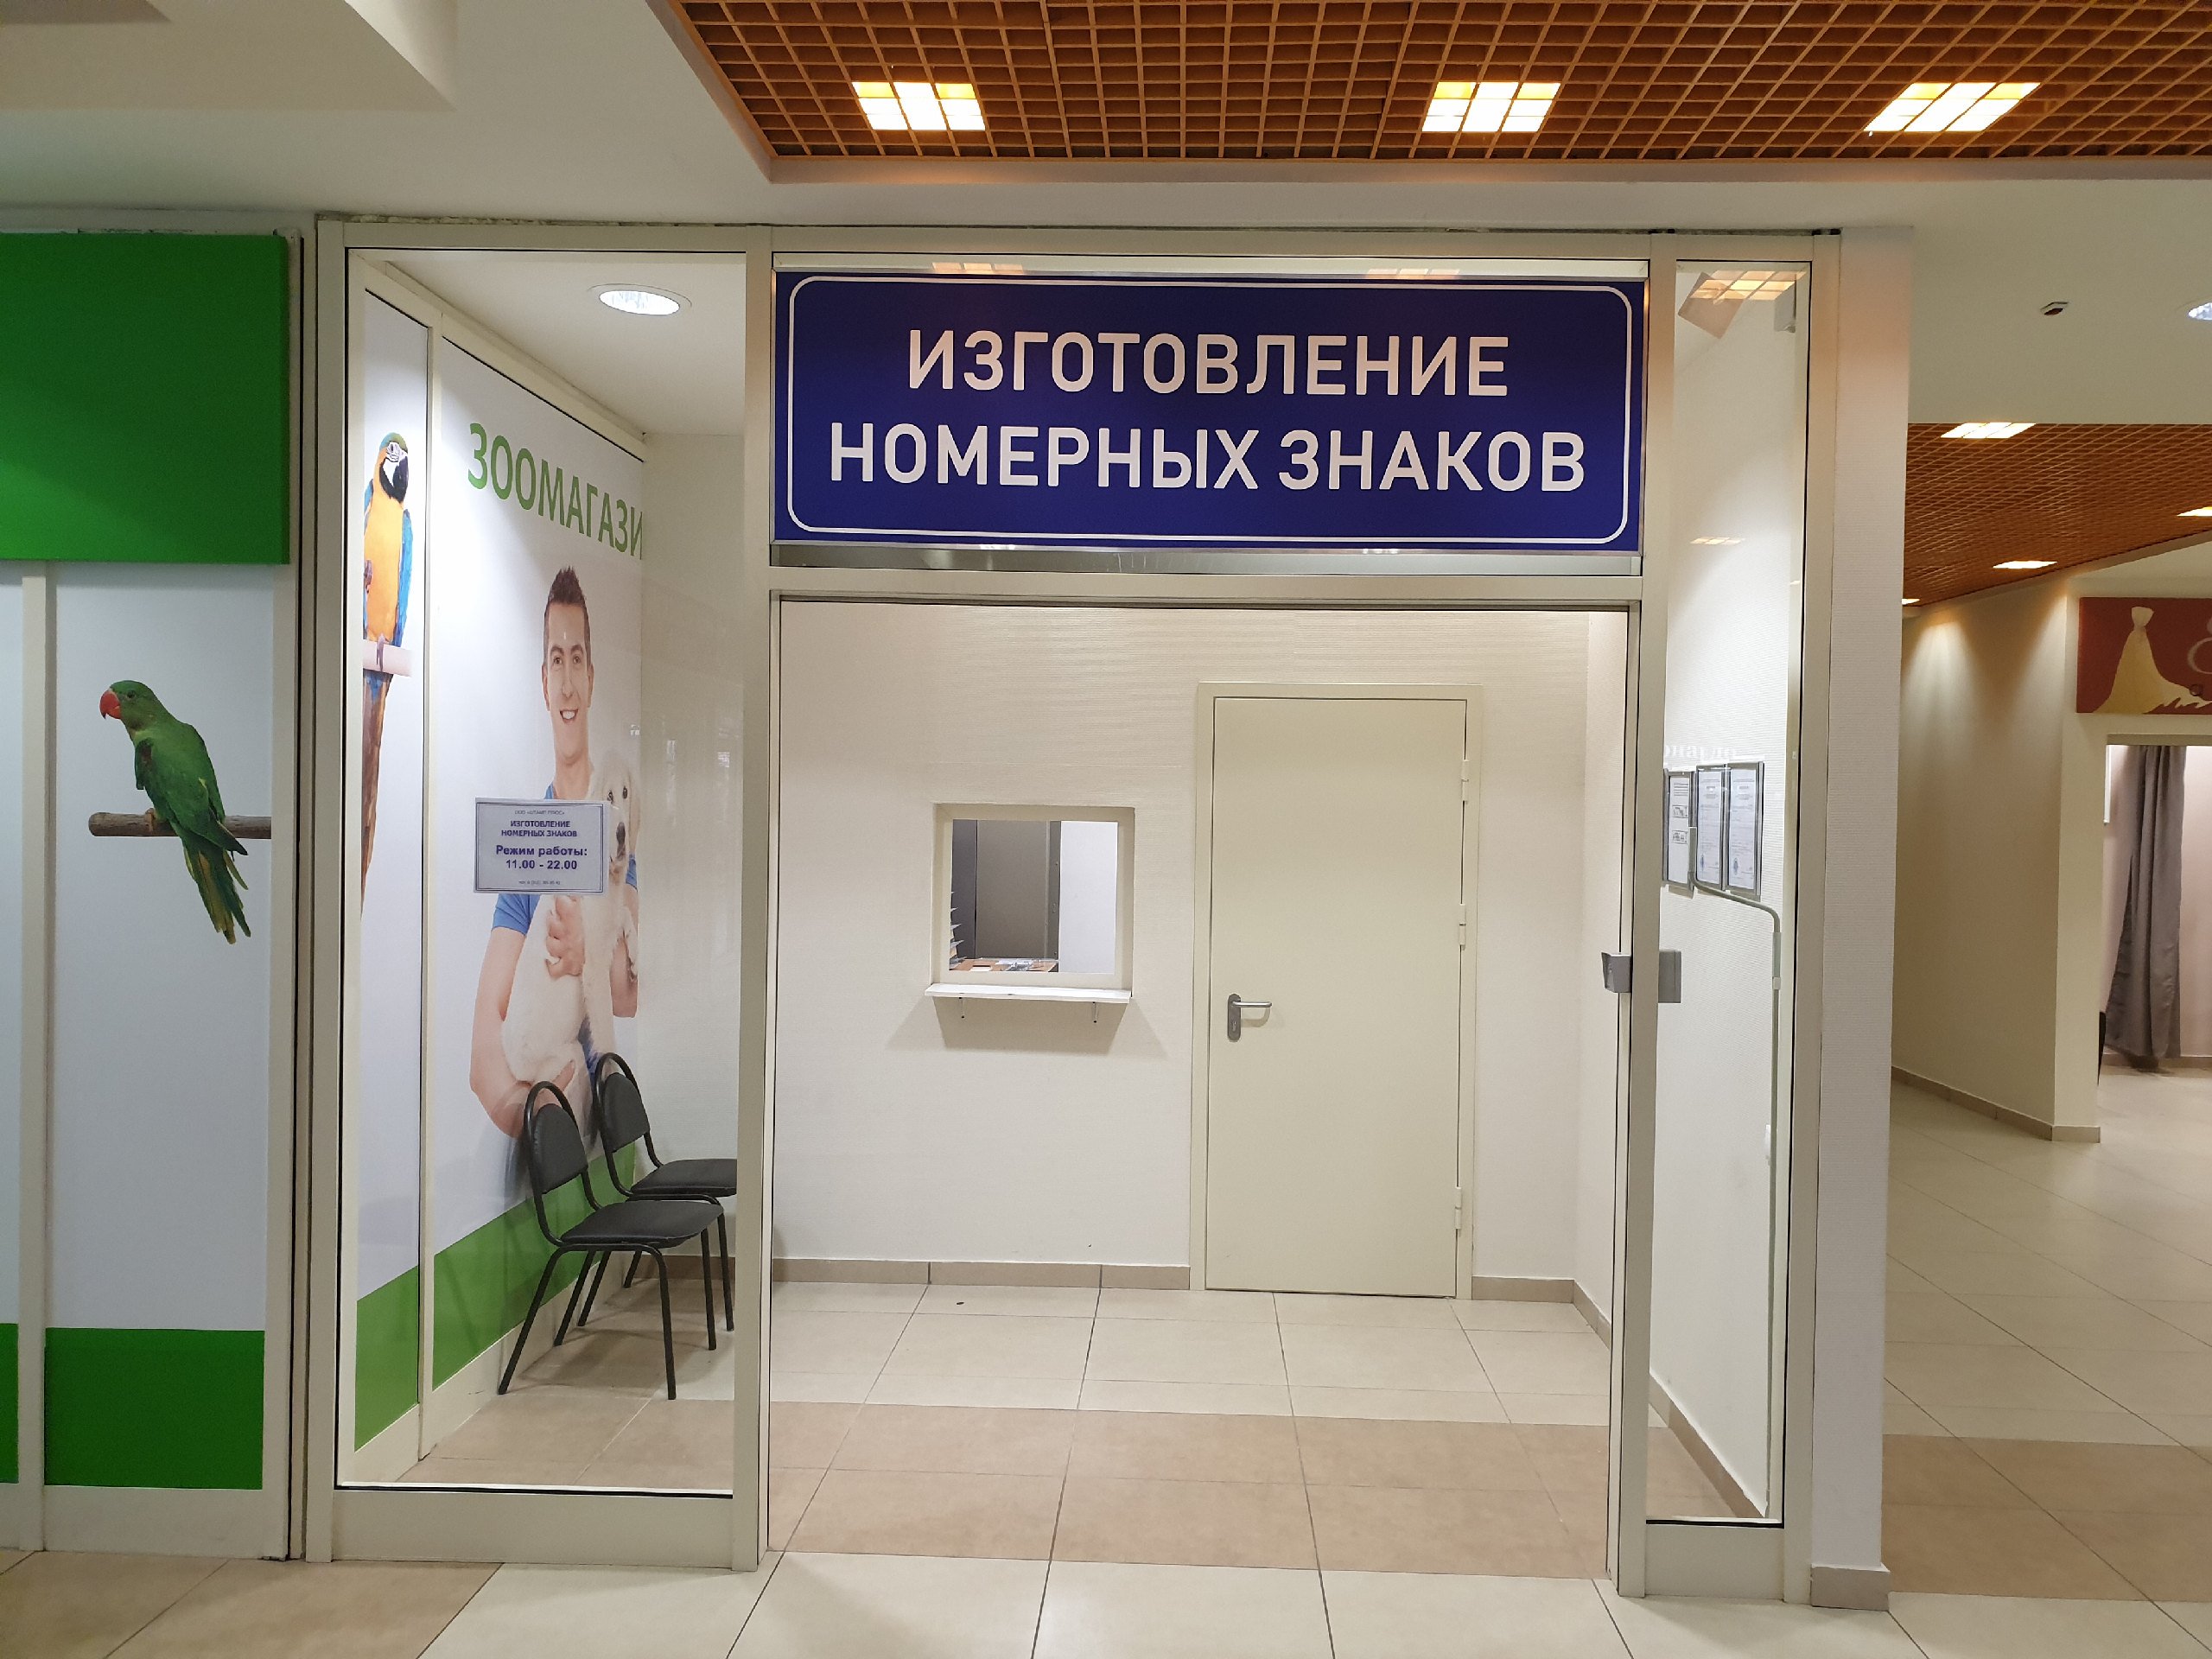 Штамп плюс, компания по изготовлению номерных знаков, Новоясеневский проспект, 1, 0 этаж